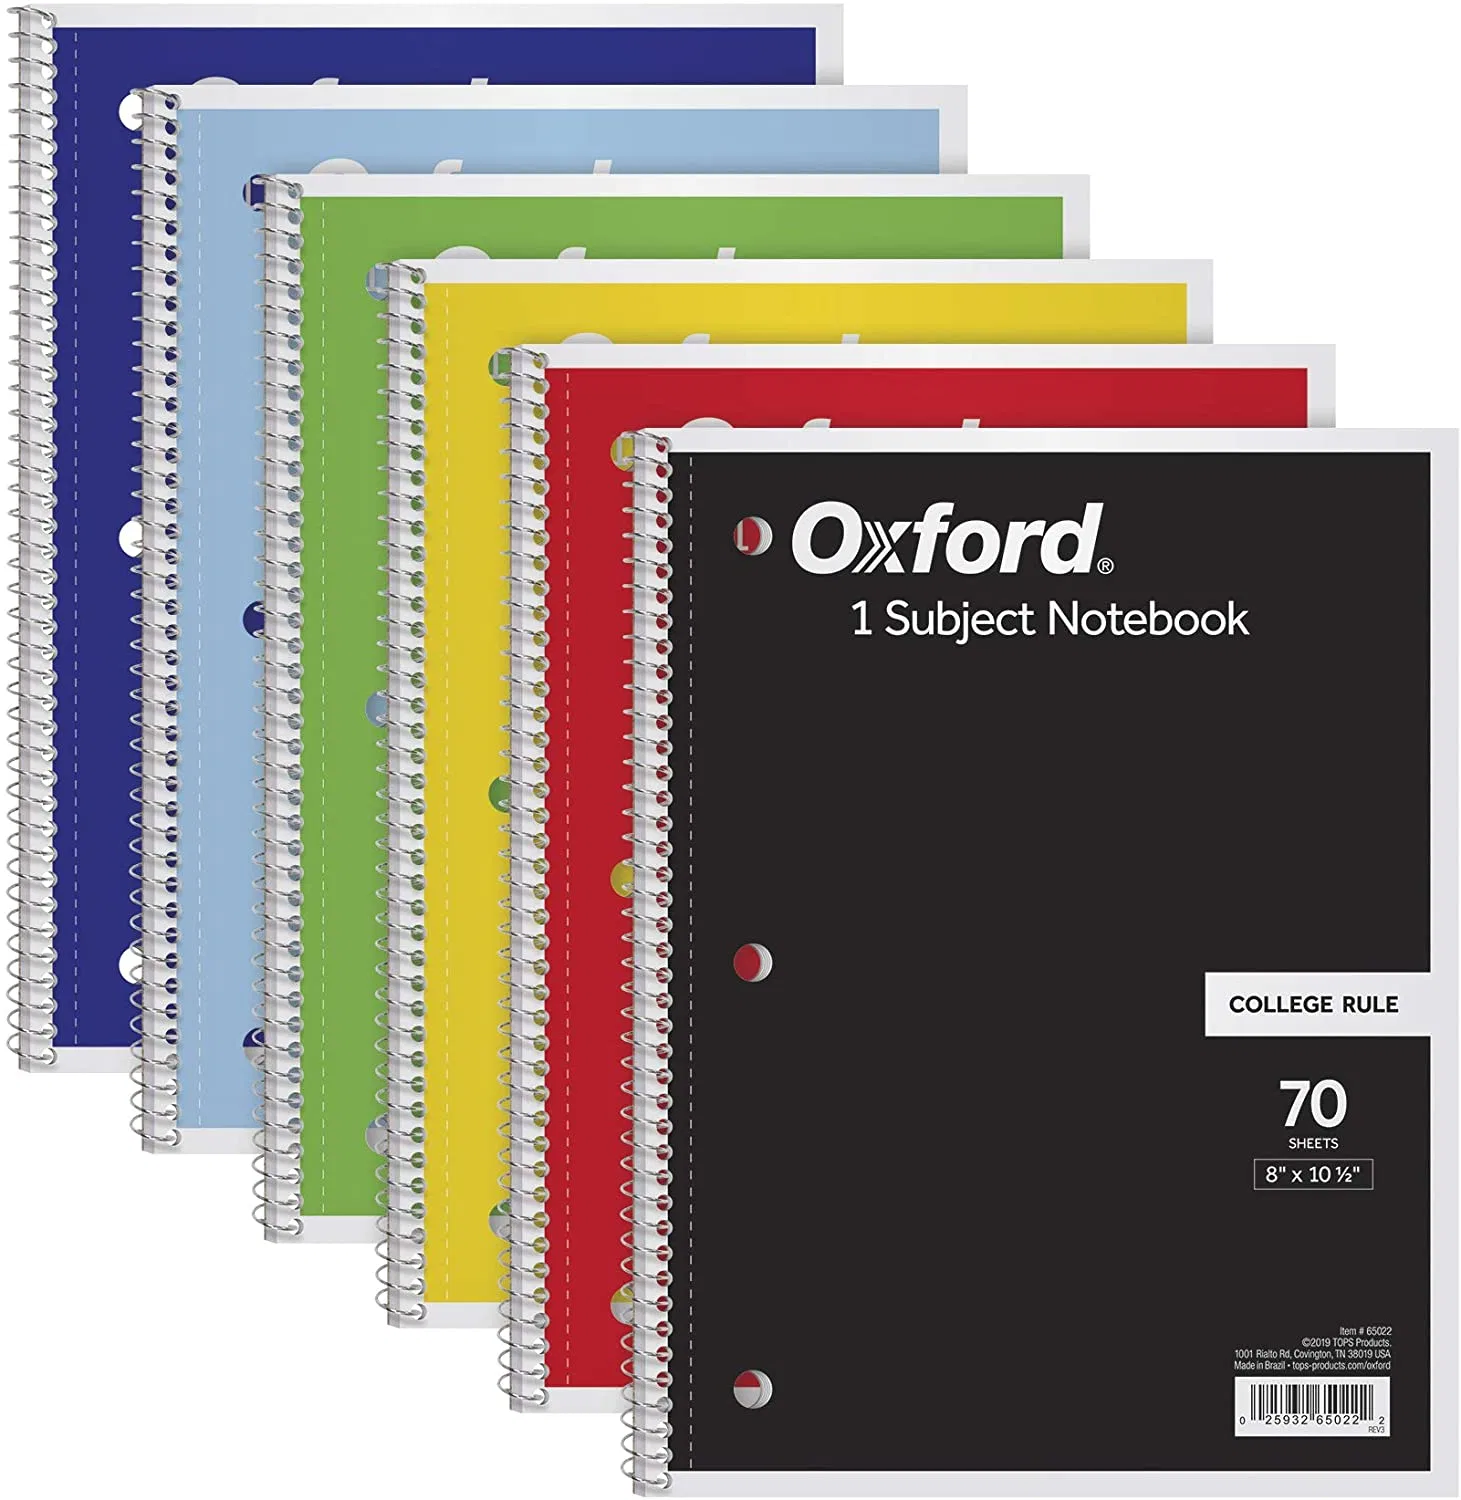 A4 Oxford espiral encuadernado Journals portátil Mayoreo 6 paquete, 1 materia, papel regido de la universidad, surtido de color puede variar